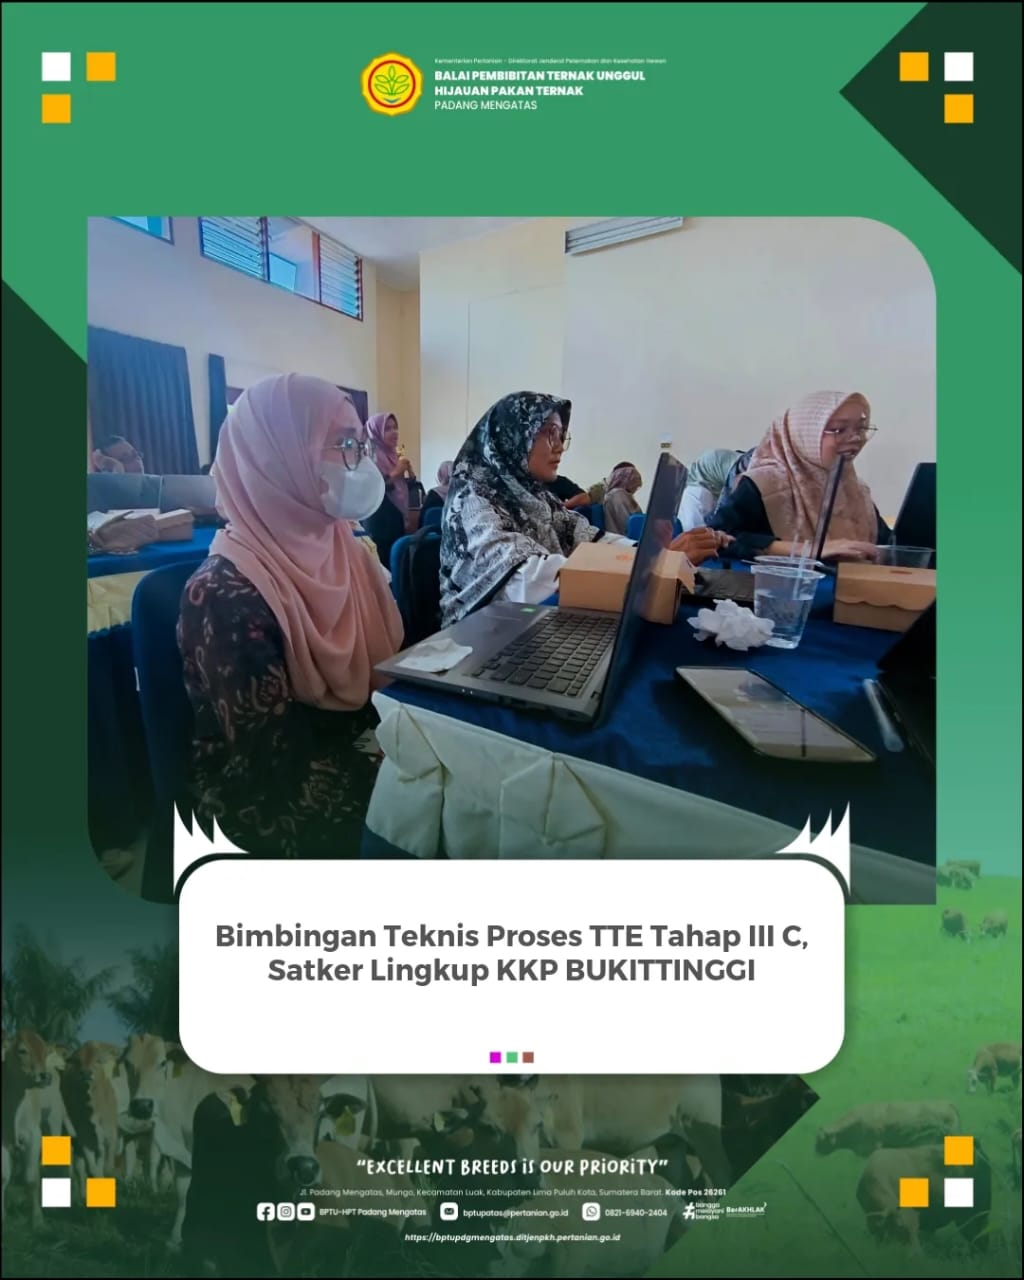 Bimbingan Teknis Proses TTE Tahap III C,  Satker Lingkup KKP Bukittinggi